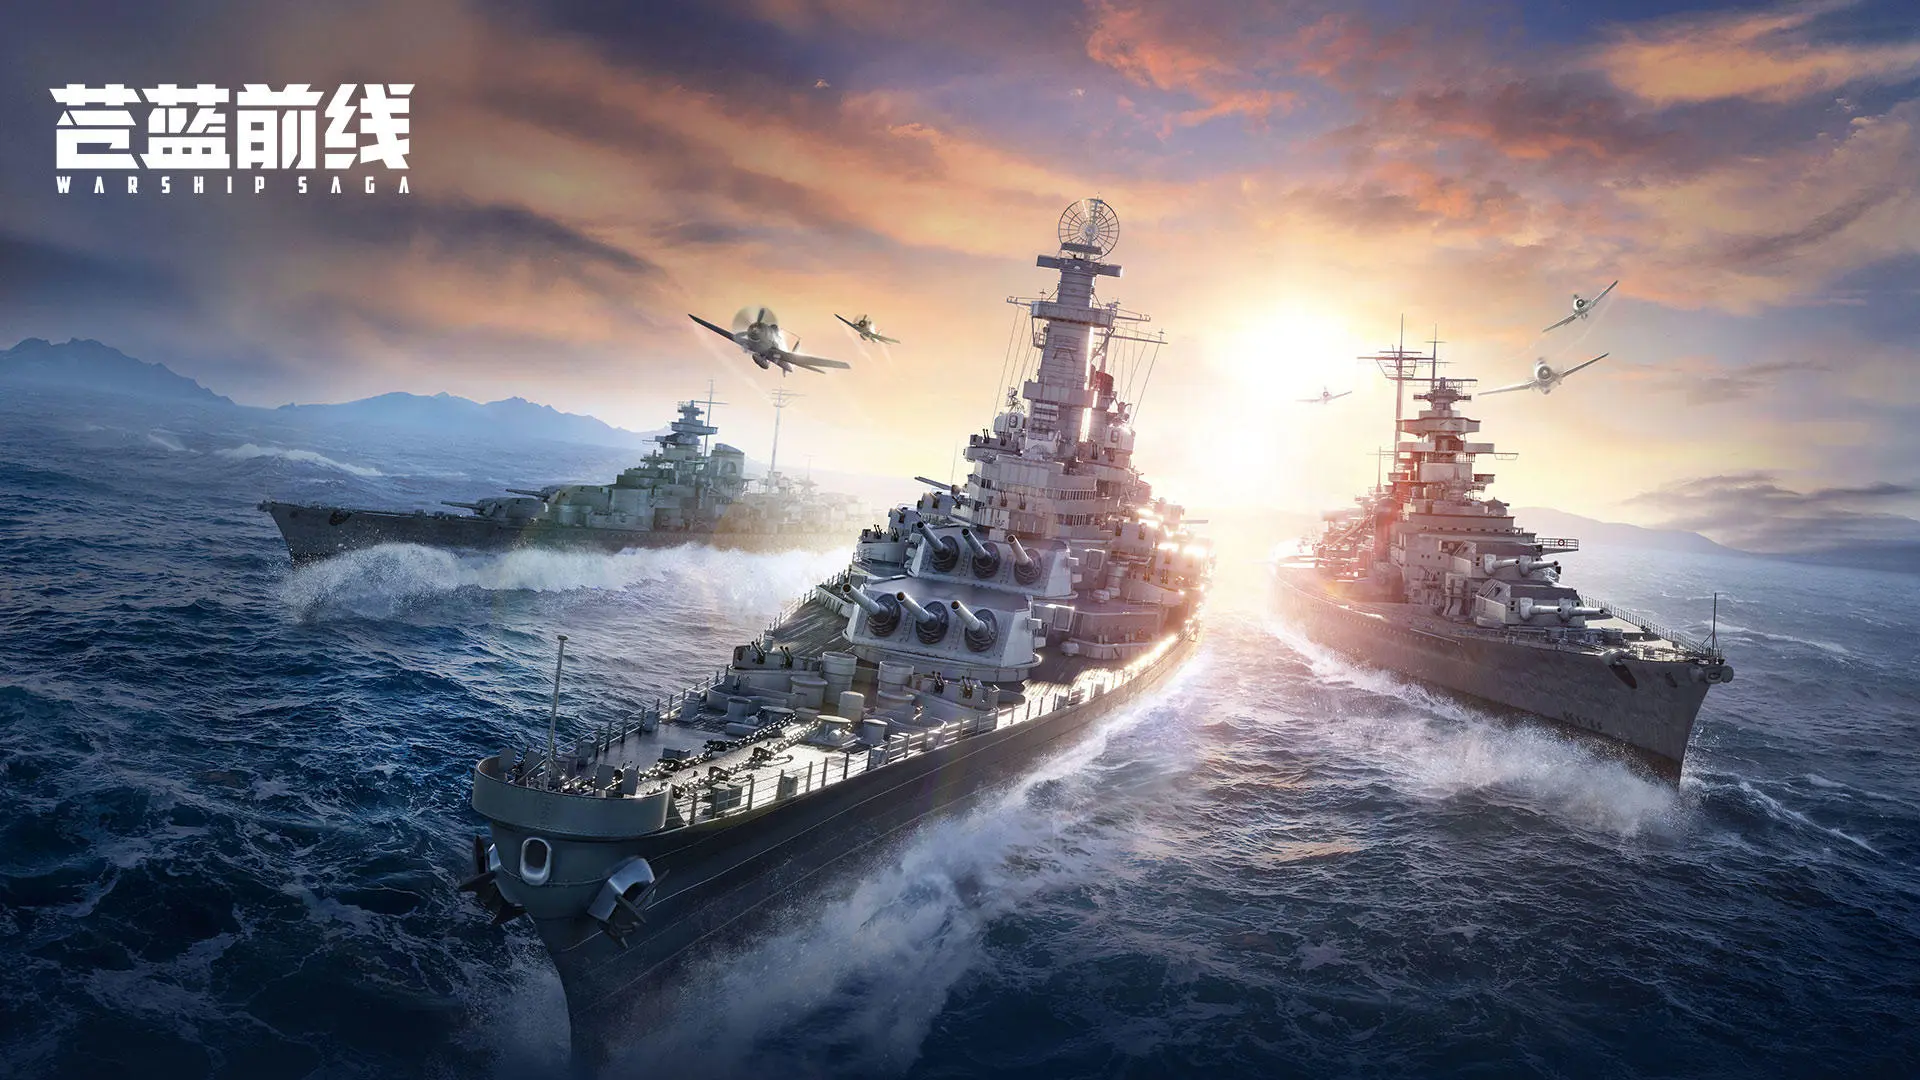 Azure: Warship Sagaのキャプチャ